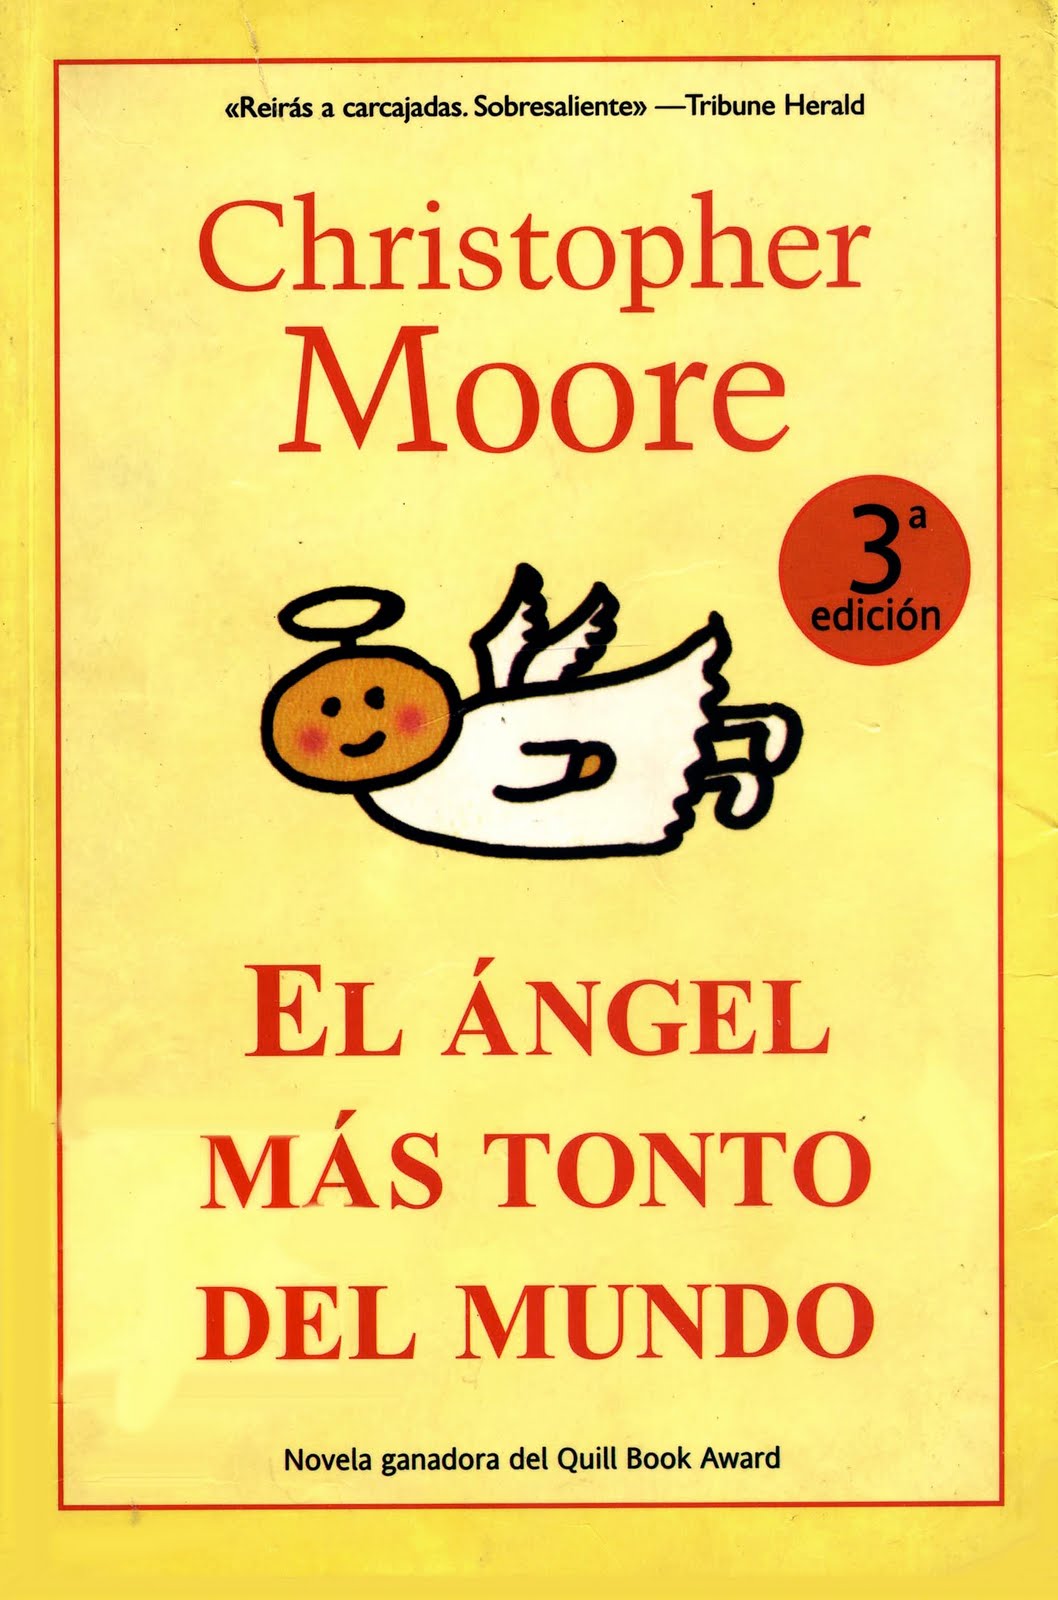 DICIEMBRE 2015: El Ángel más tonto del mundo - Christopher Moore. El+angel+mas+tonto+del+mundo+144